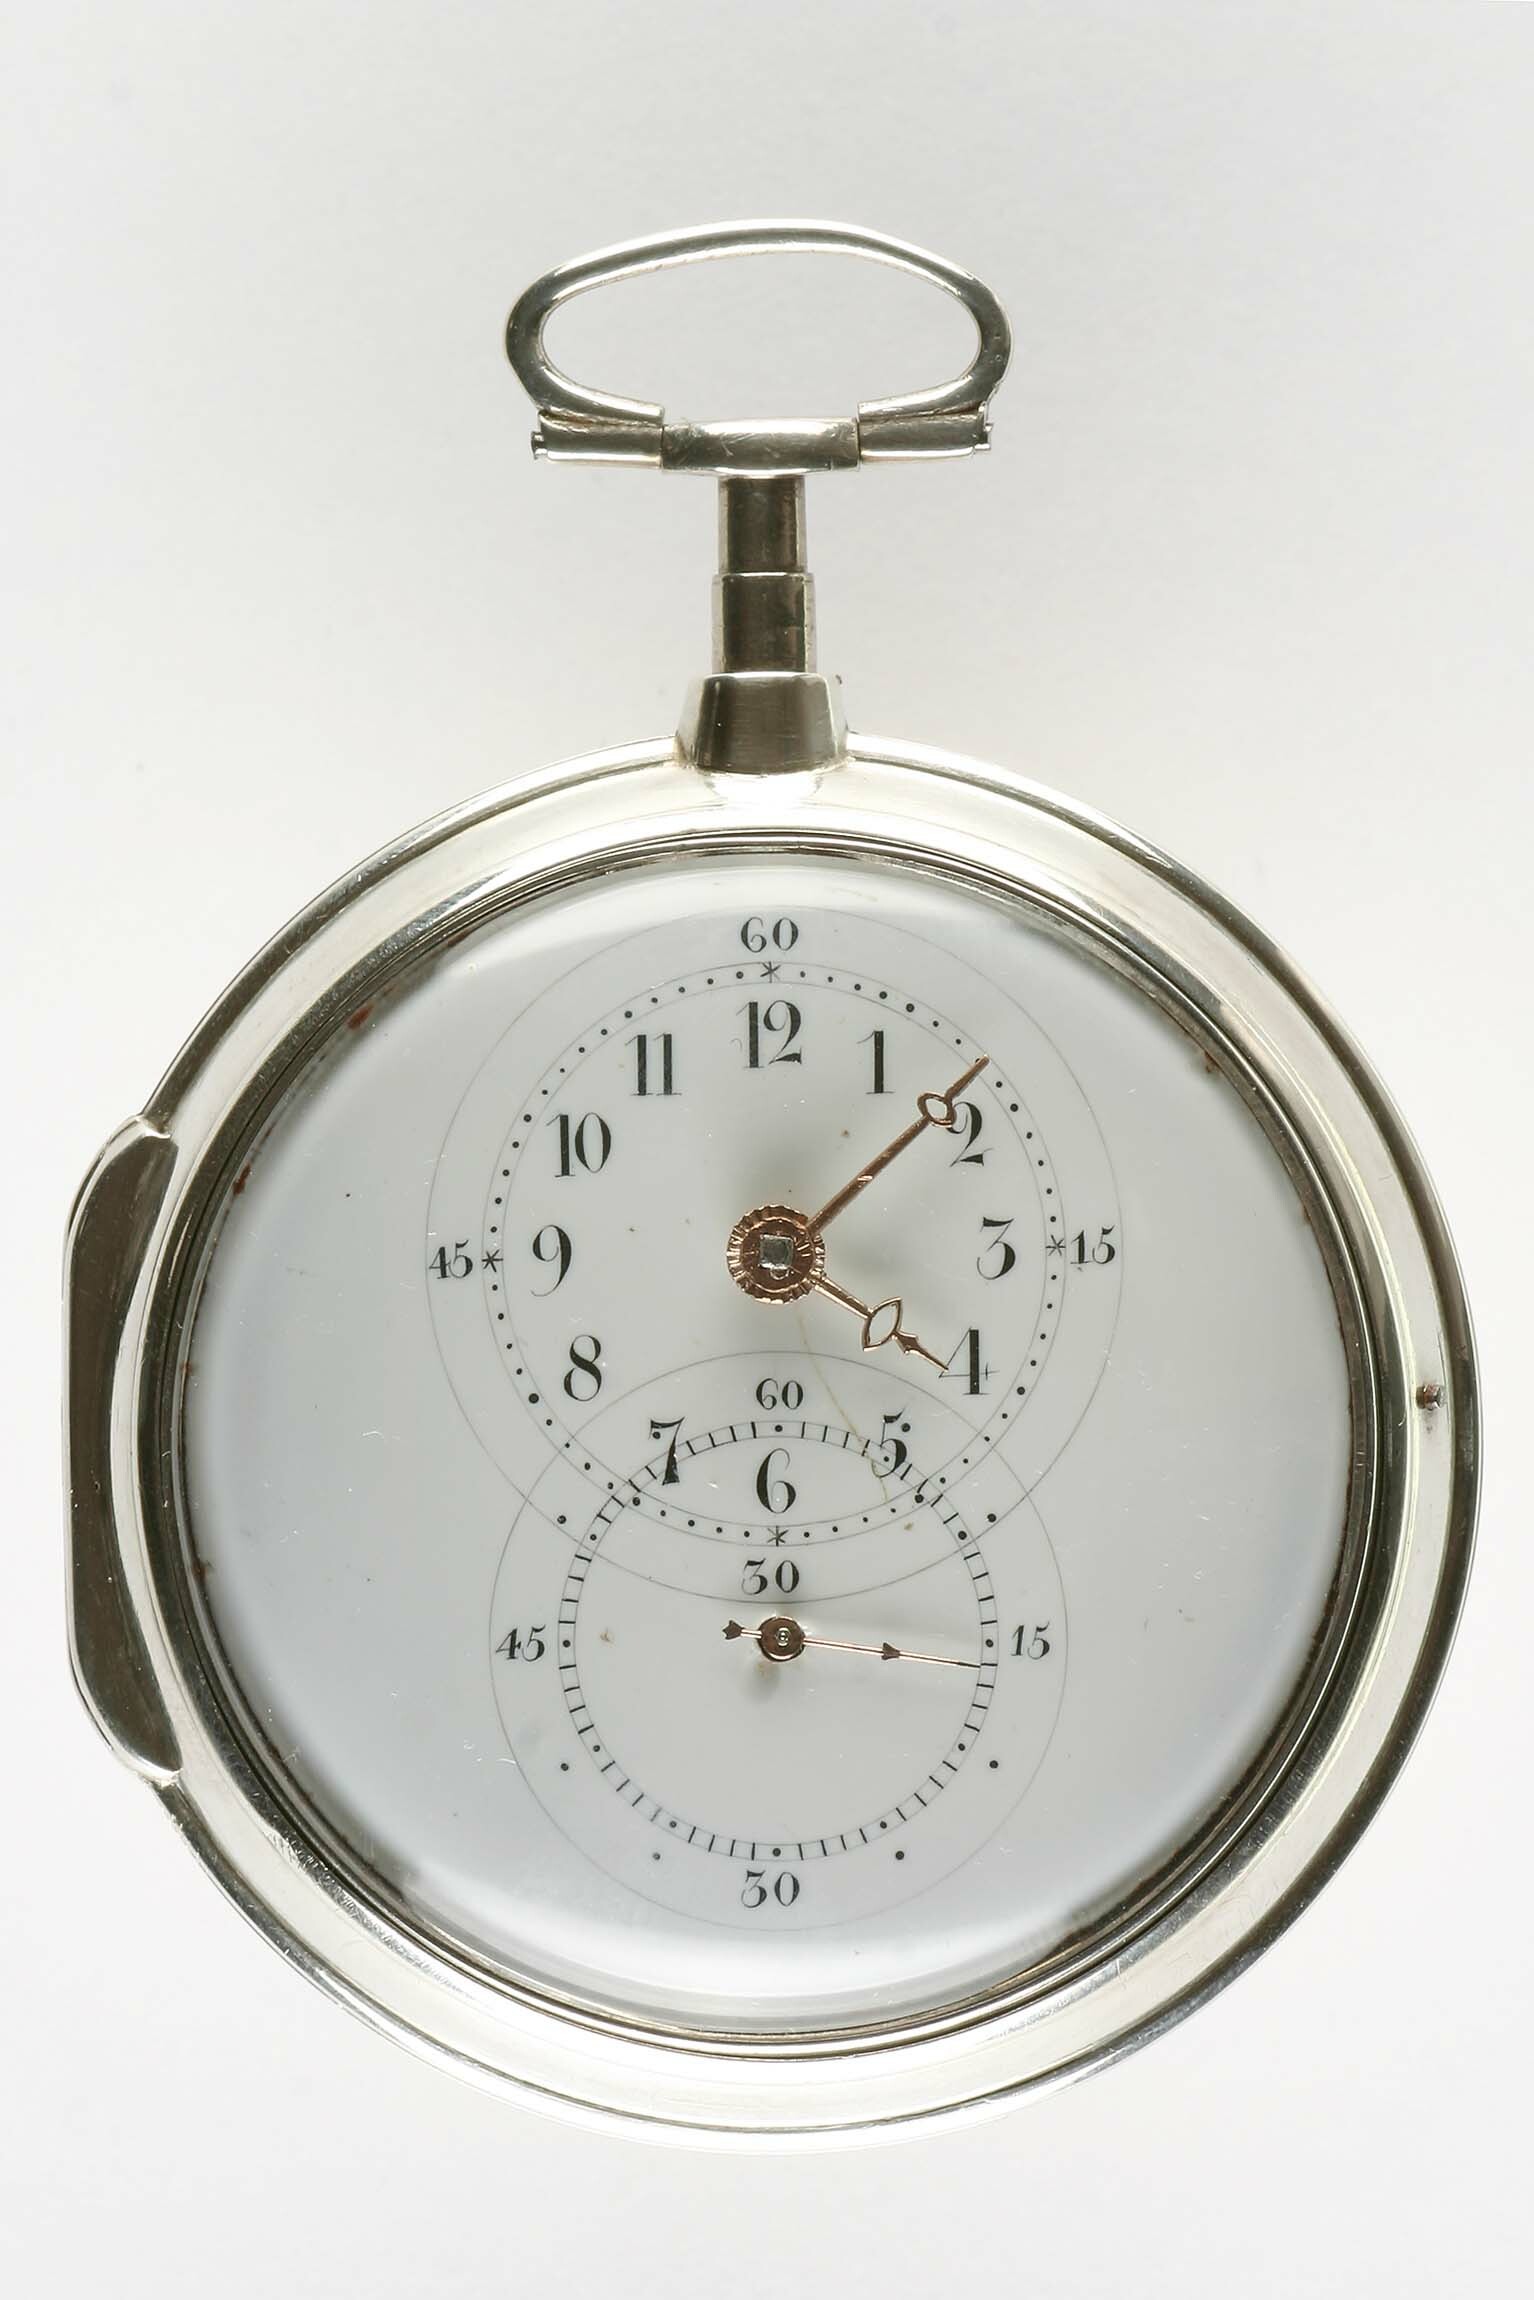 Taschenuhr, John Harrison, London, 1801 (Deutsches Uhrenmuseum CC BY-SA)